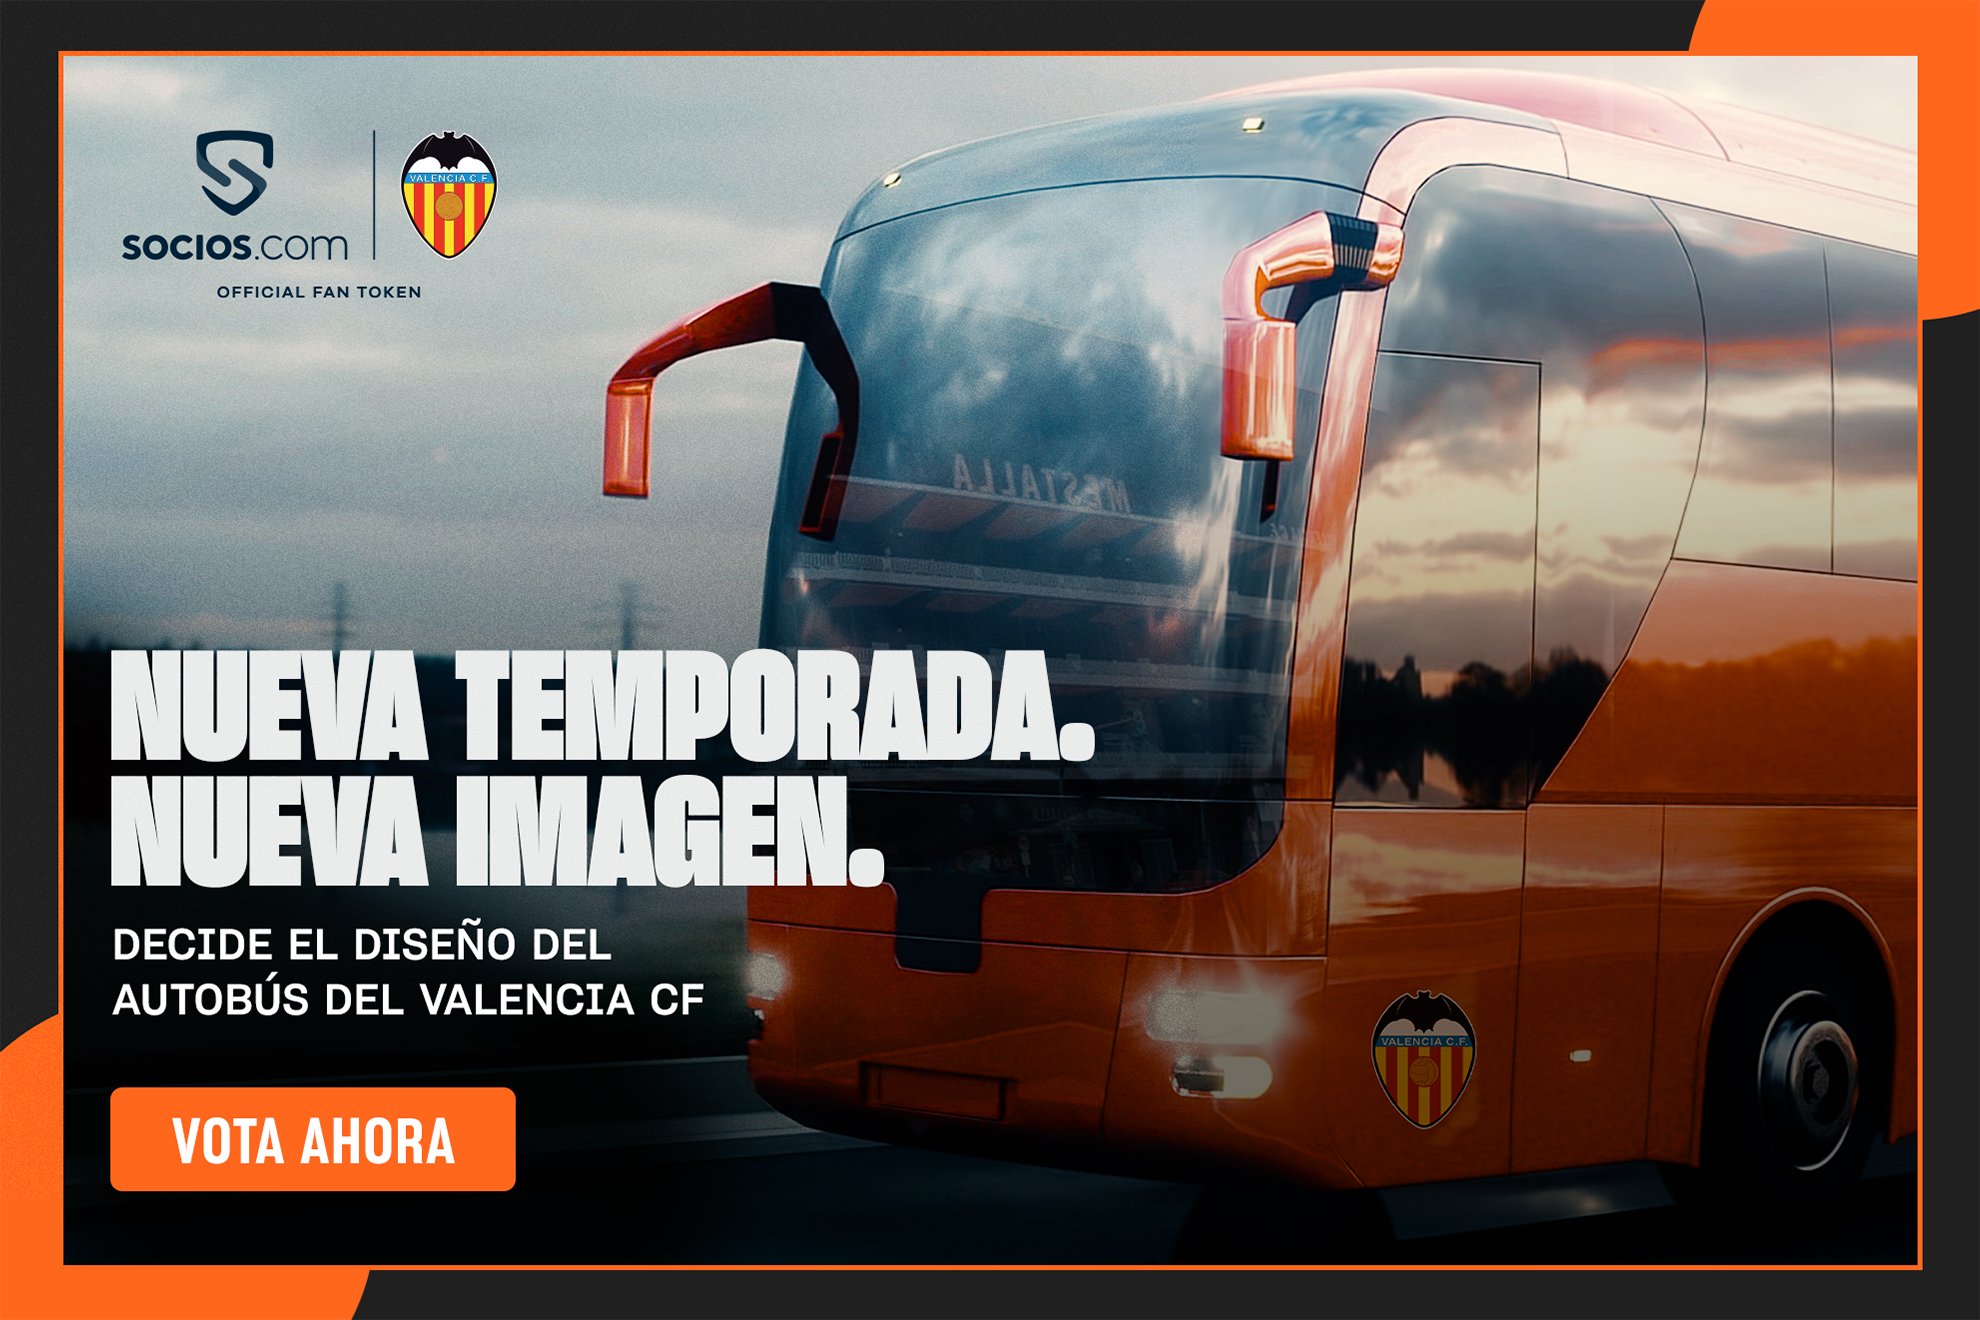 Los tokenistas del Valencia CF elegirán el diseño del bus del equipo y participarán en su decoración